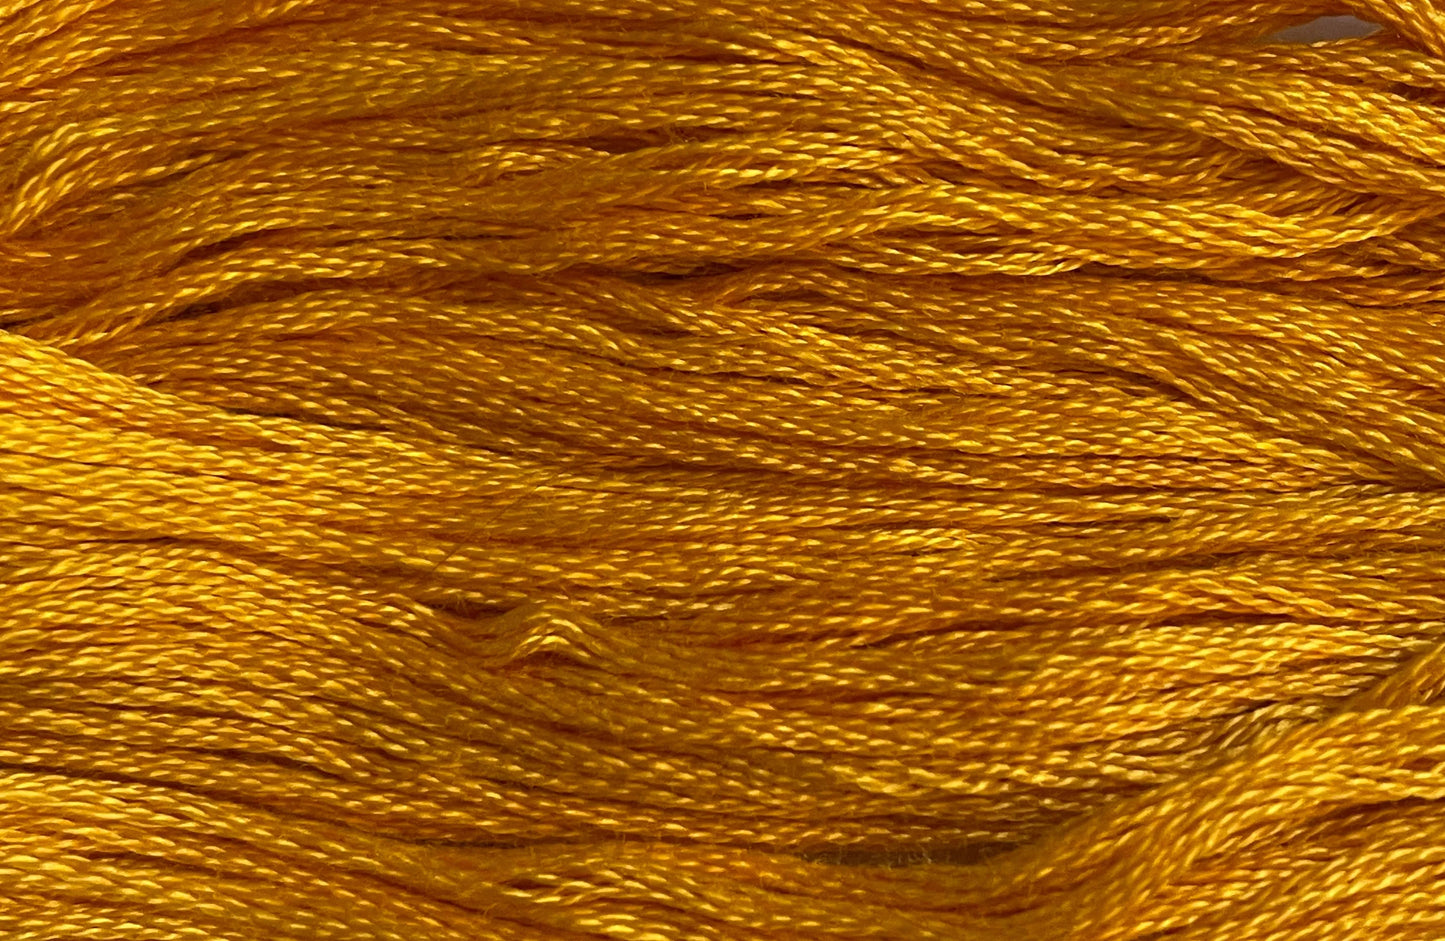 Sunflower - Gentle Arts Cotton Thread - 5 yard Skein - Cross Stitch Floss, Thread & Floss, Thread & Floss, The Crafty Grimalkin - A Cross Stitch Store